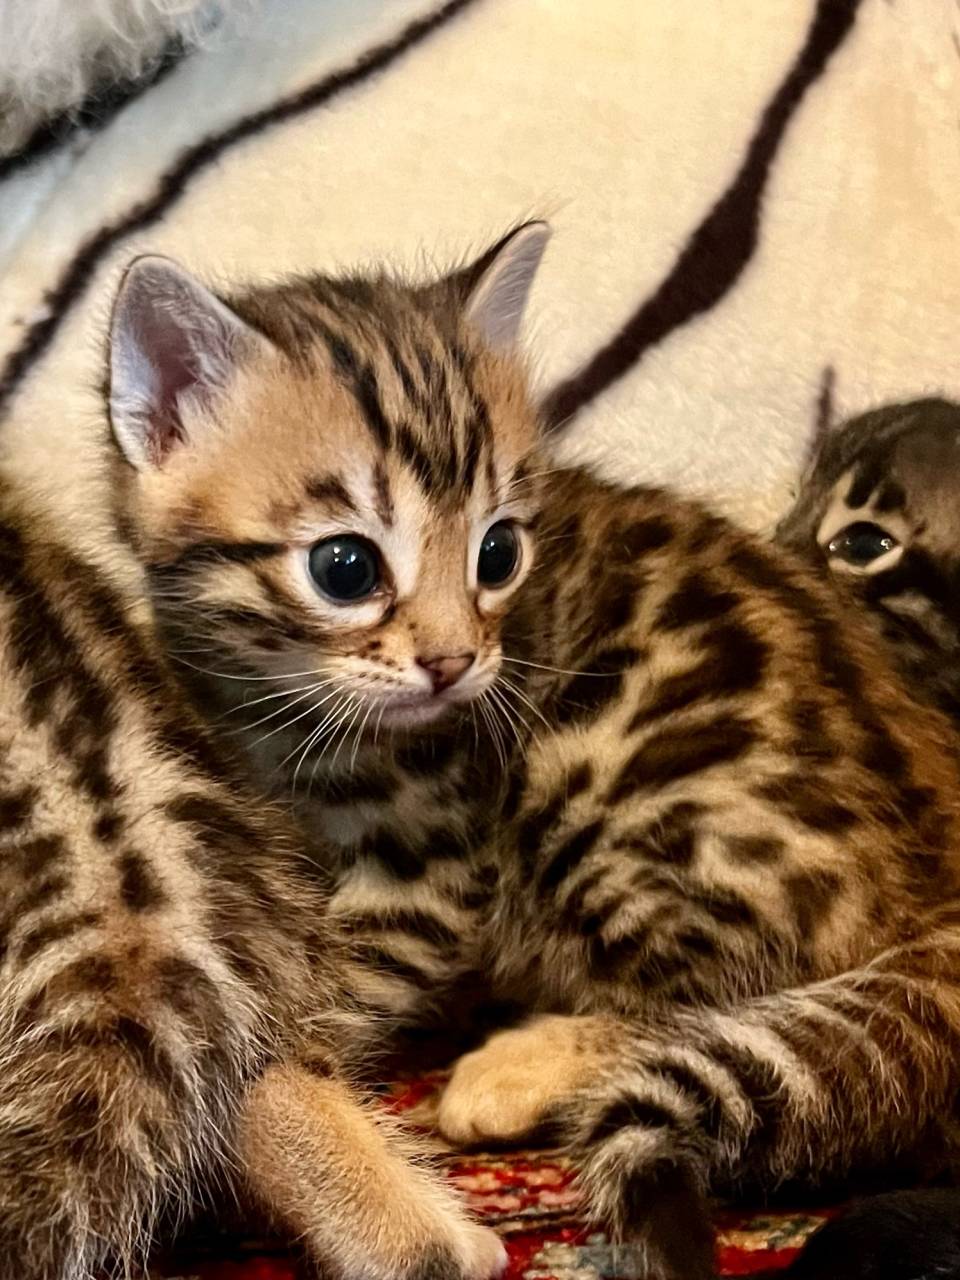 Bengal cat named Kitten